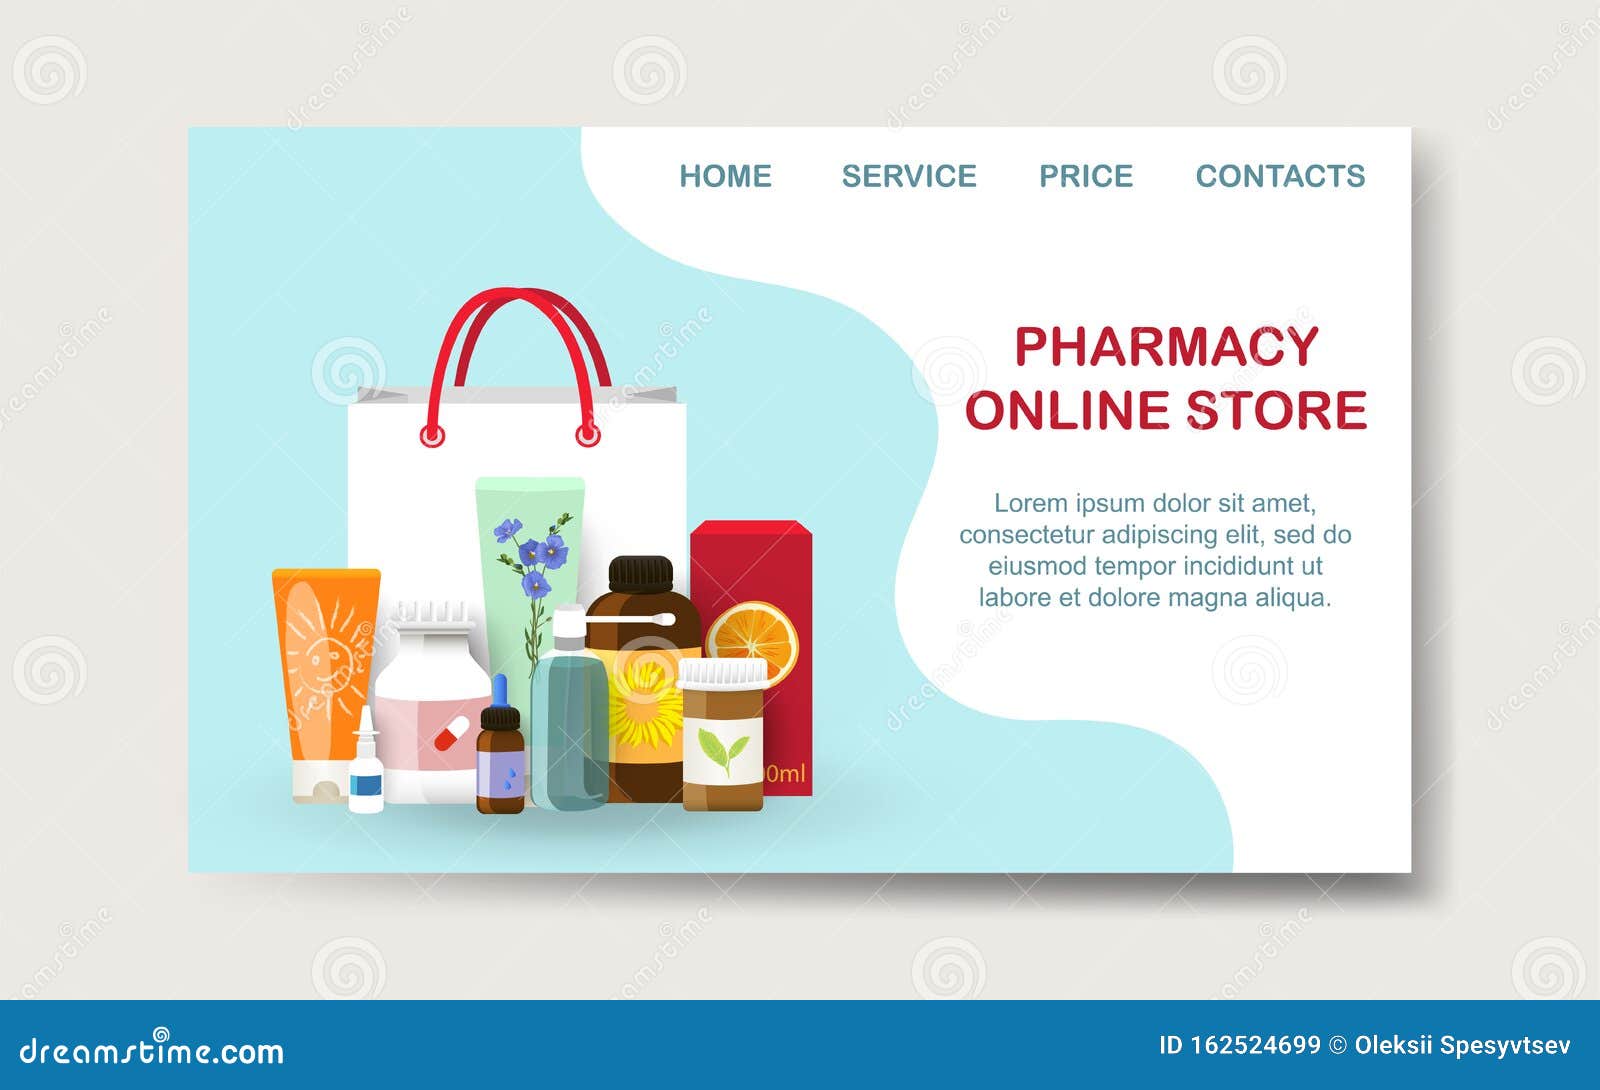 Pharmacy online store